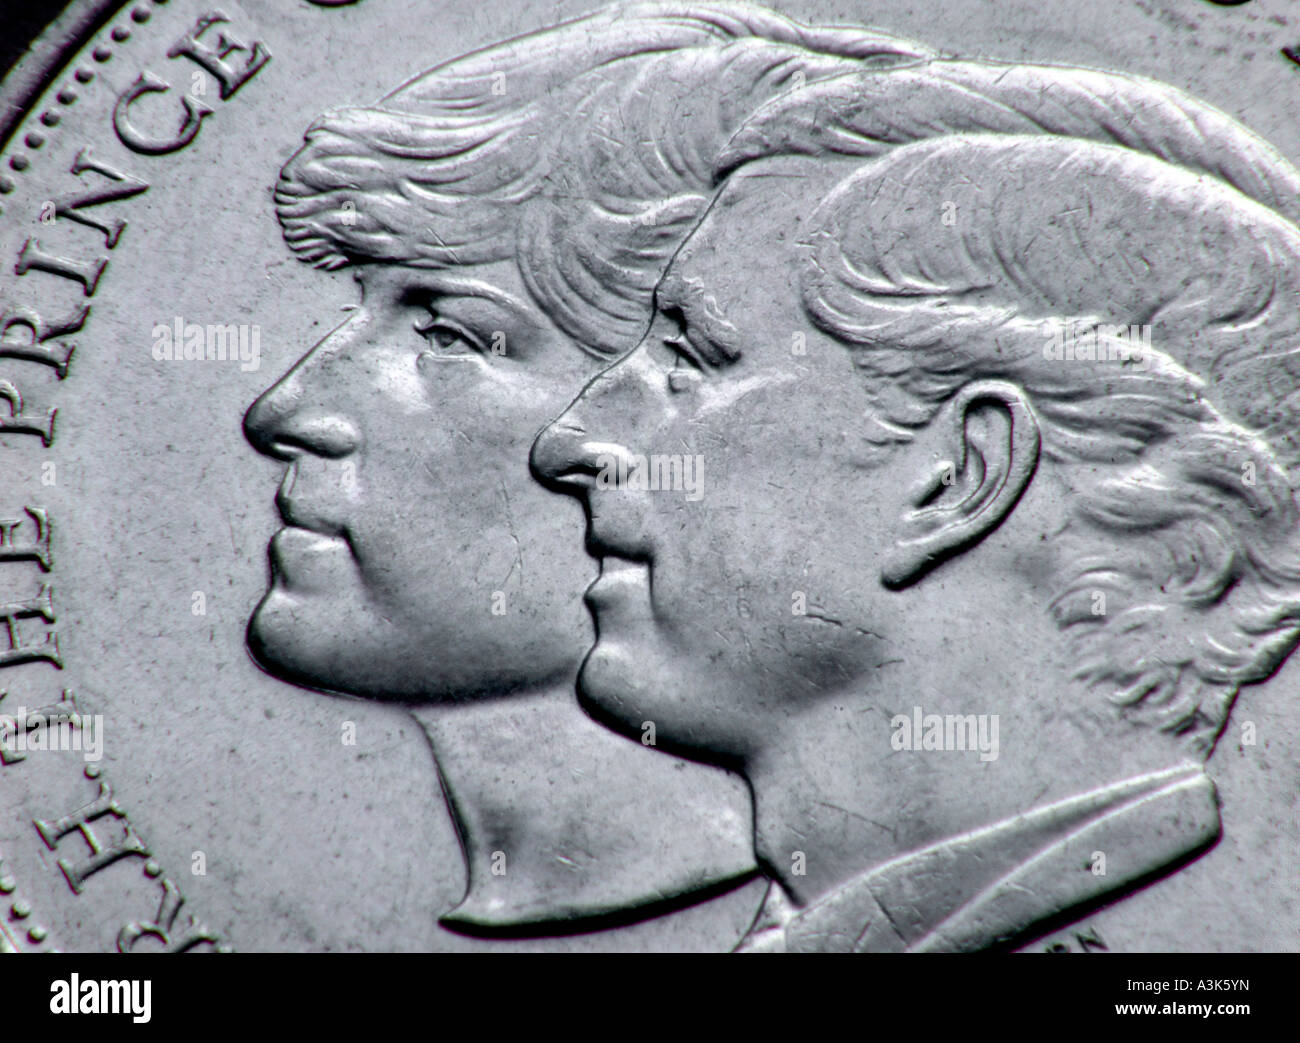 Königliche Hochzeit silberne Krone Münze Charles und Di 1981 in gutem Zustand reverse Gesicht zeigt das Brautpaar zusammen Stockfoto